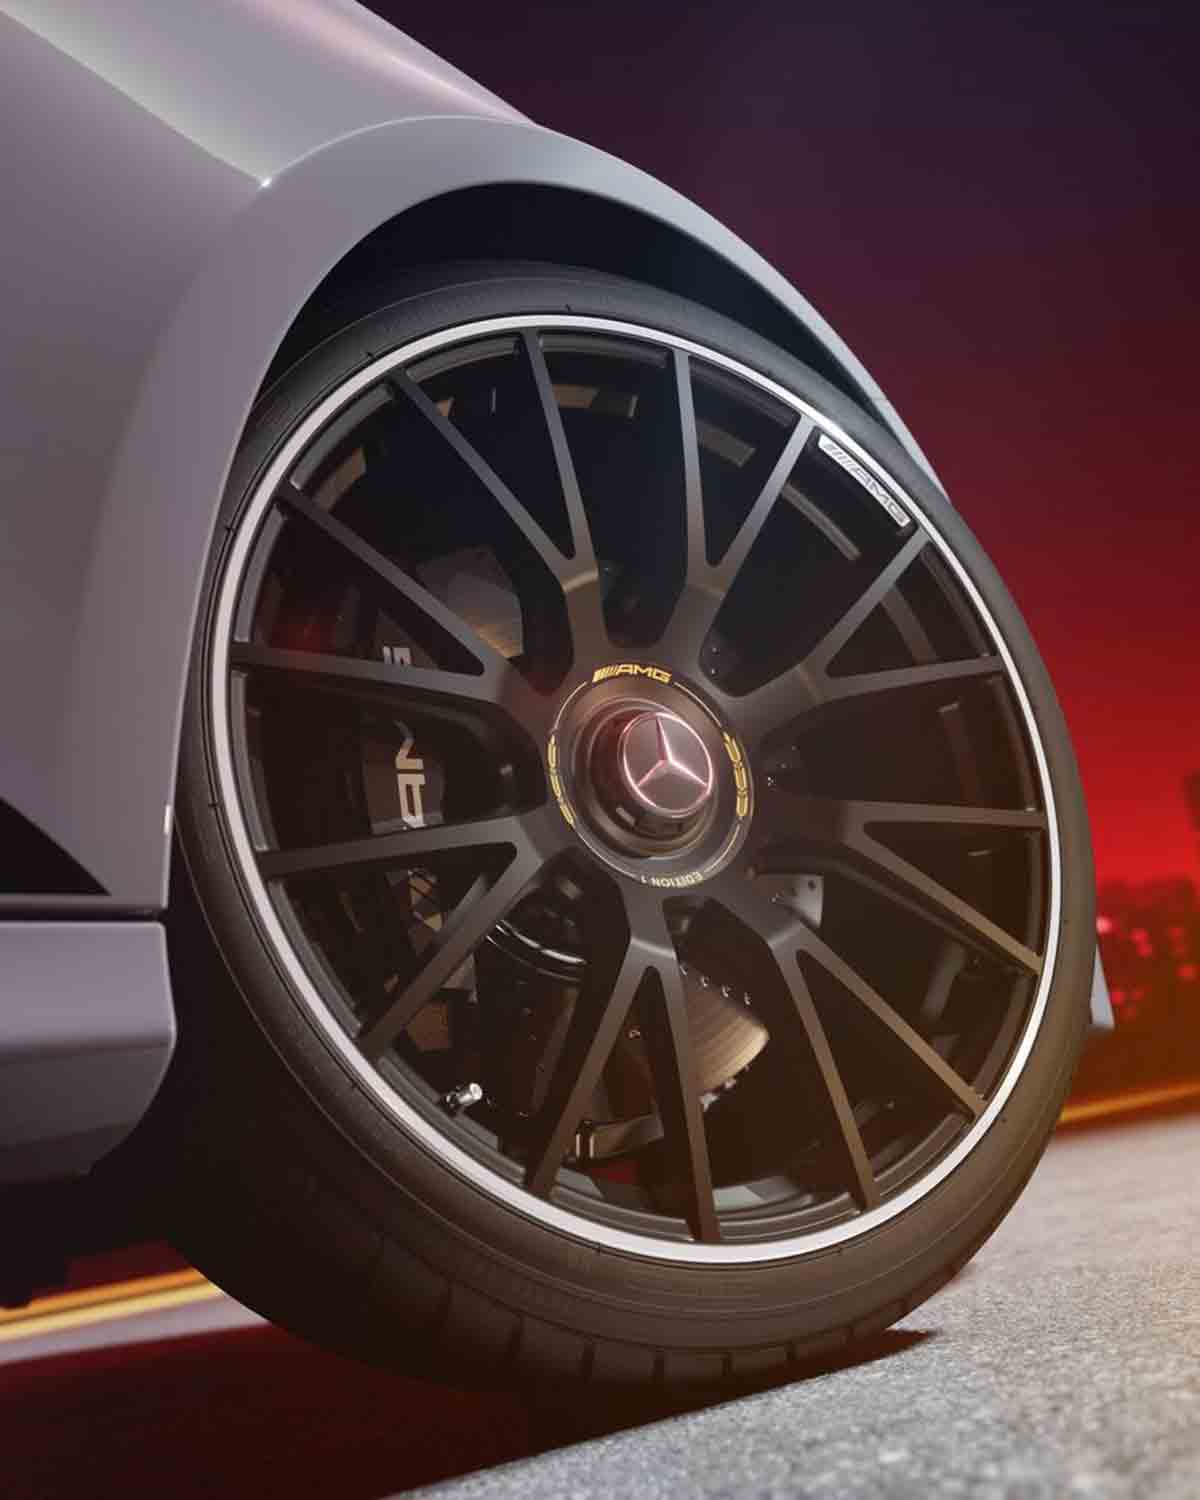 Mercedes-AMG E 53 ötvözi a teljesítményt és az hatékonyságot a legújabb hibrid innovációban (Instagram / @mercedesamg)